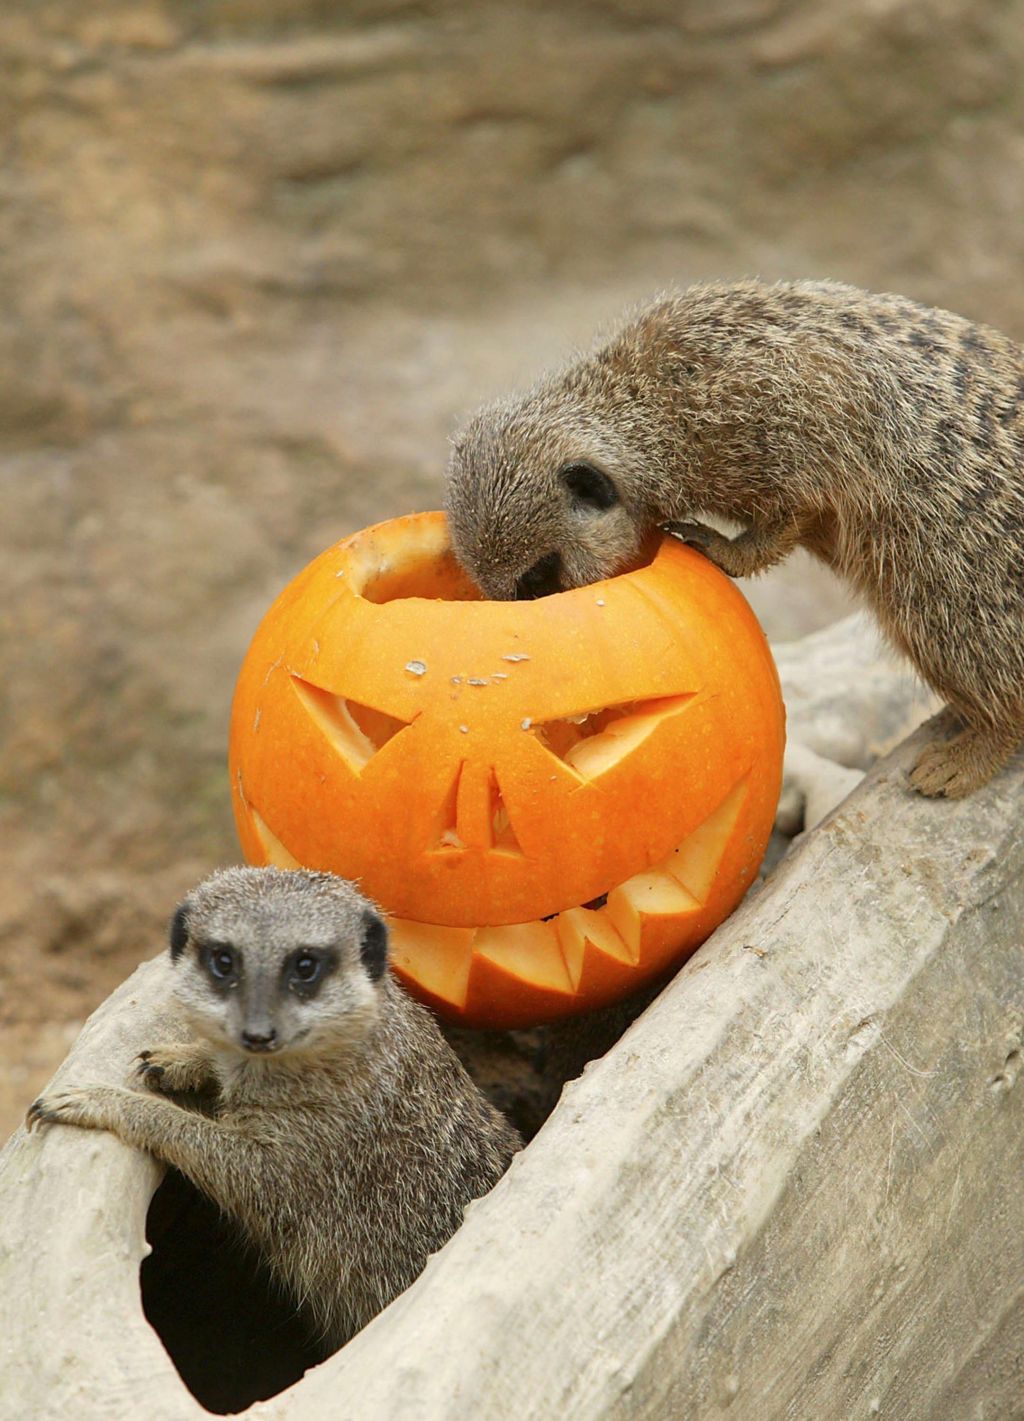 Meerkat Babies' First Halloween